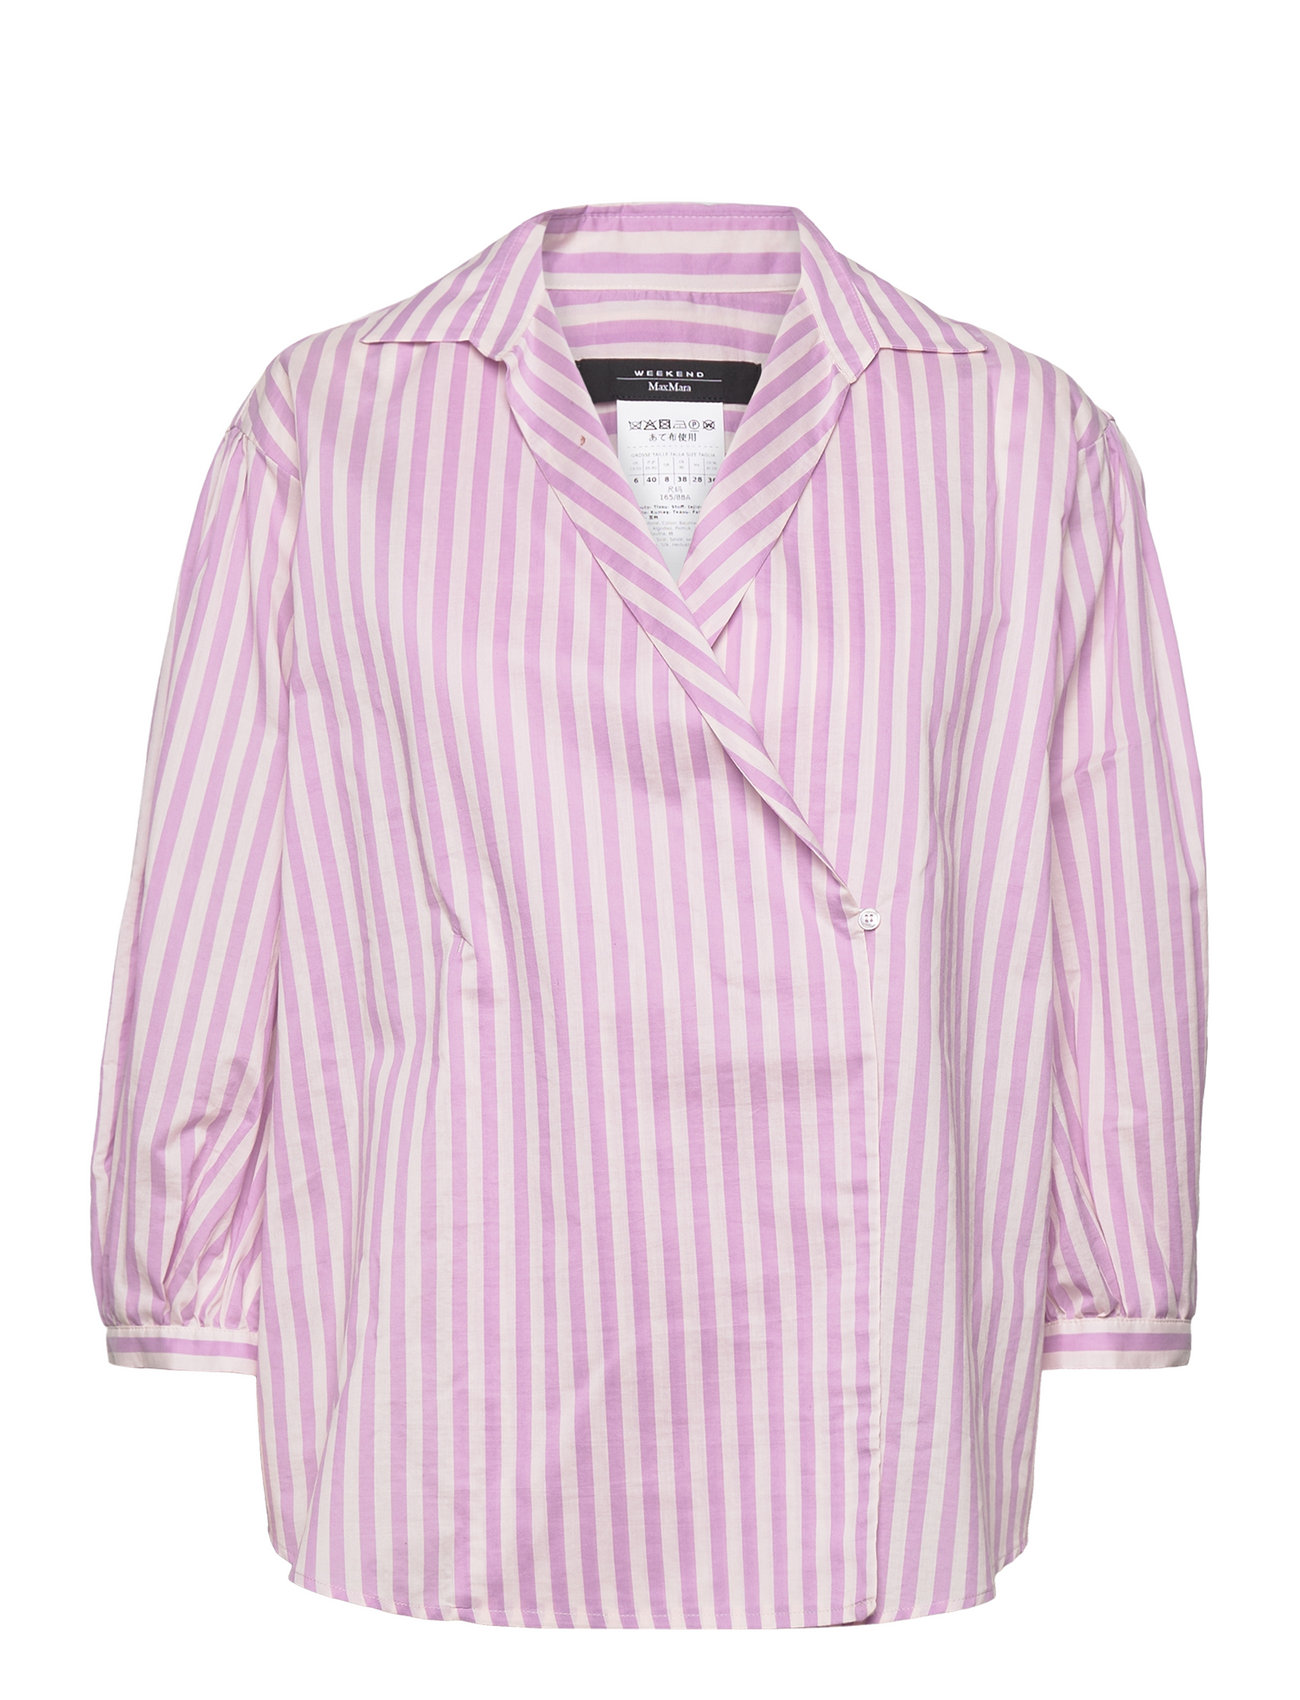 Silver Tops Shirts Long-sleeved Pink Weekend Max Mara